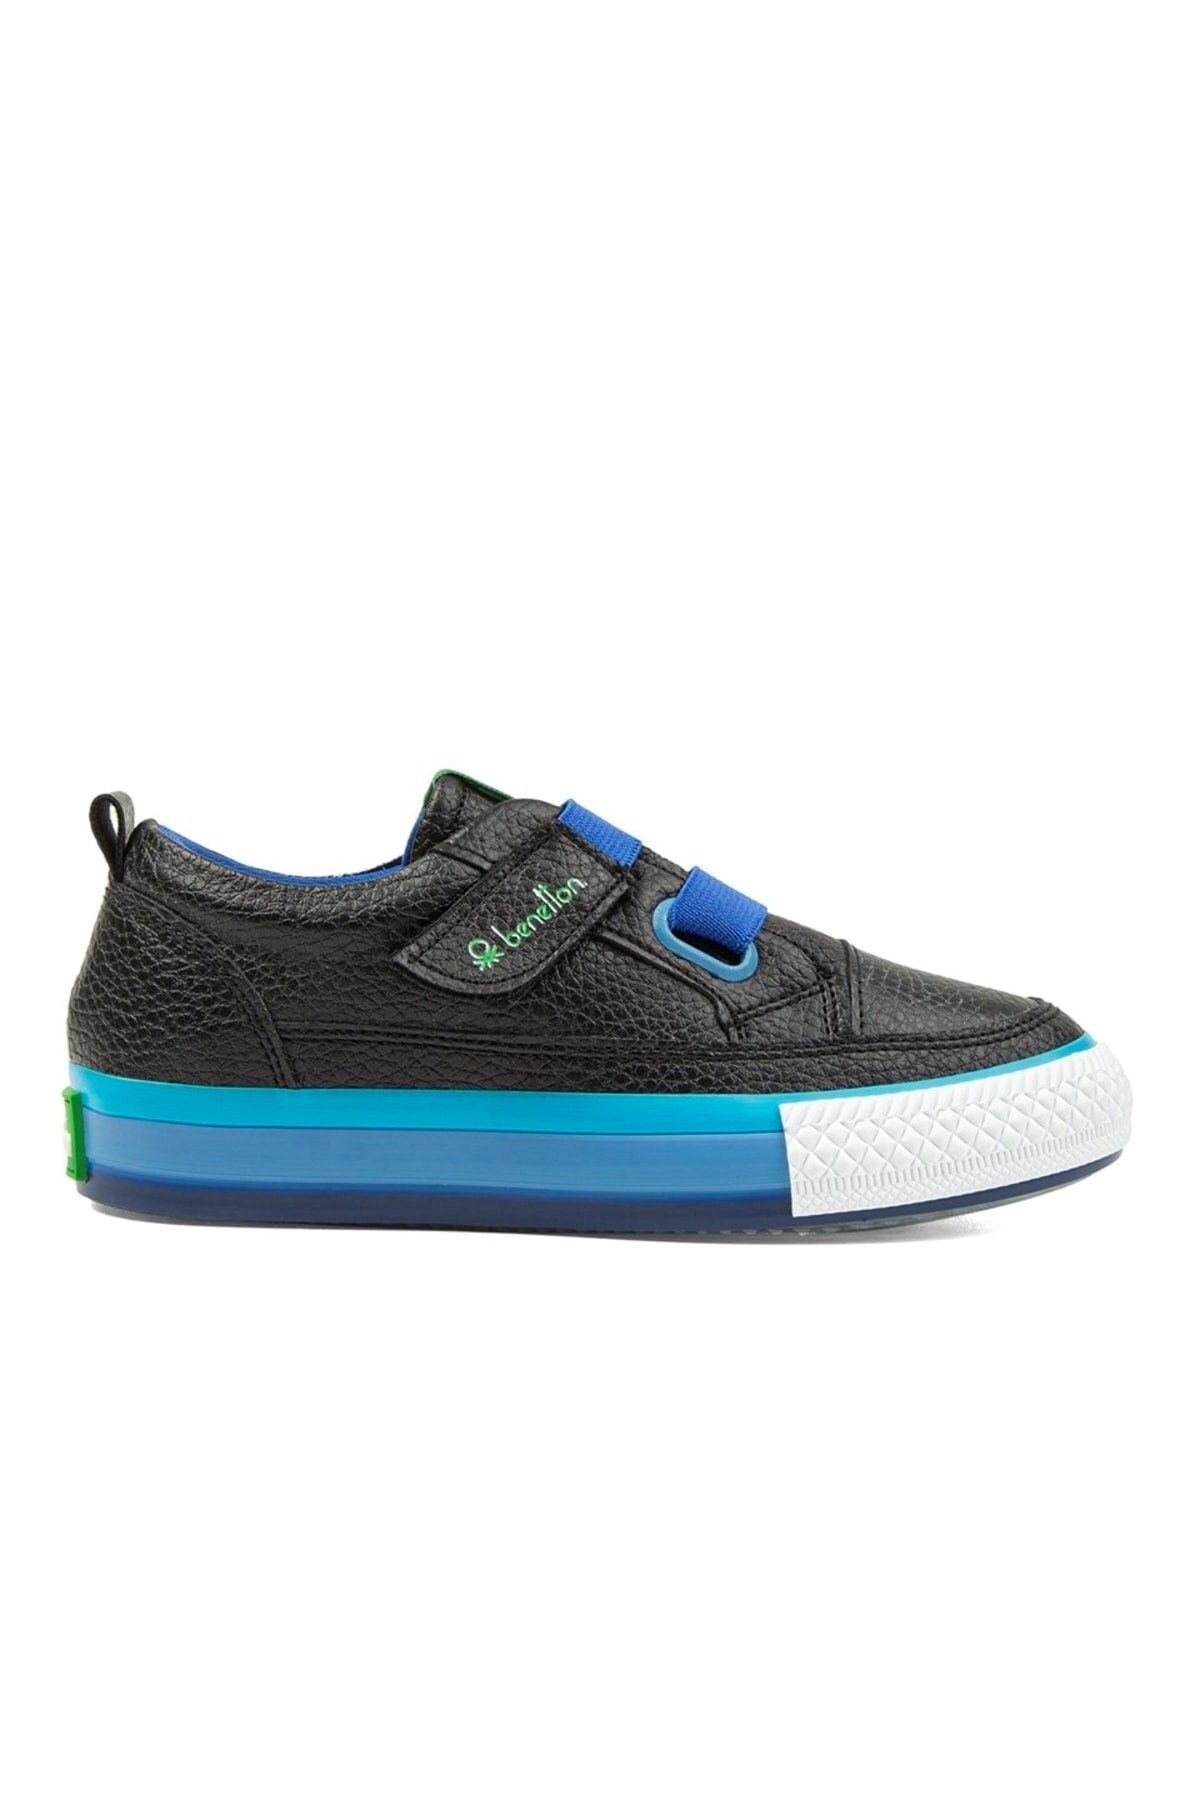 Benetton Cırtlı Günlük Siyah Mavi - Çocuk Spor Ayakkabı